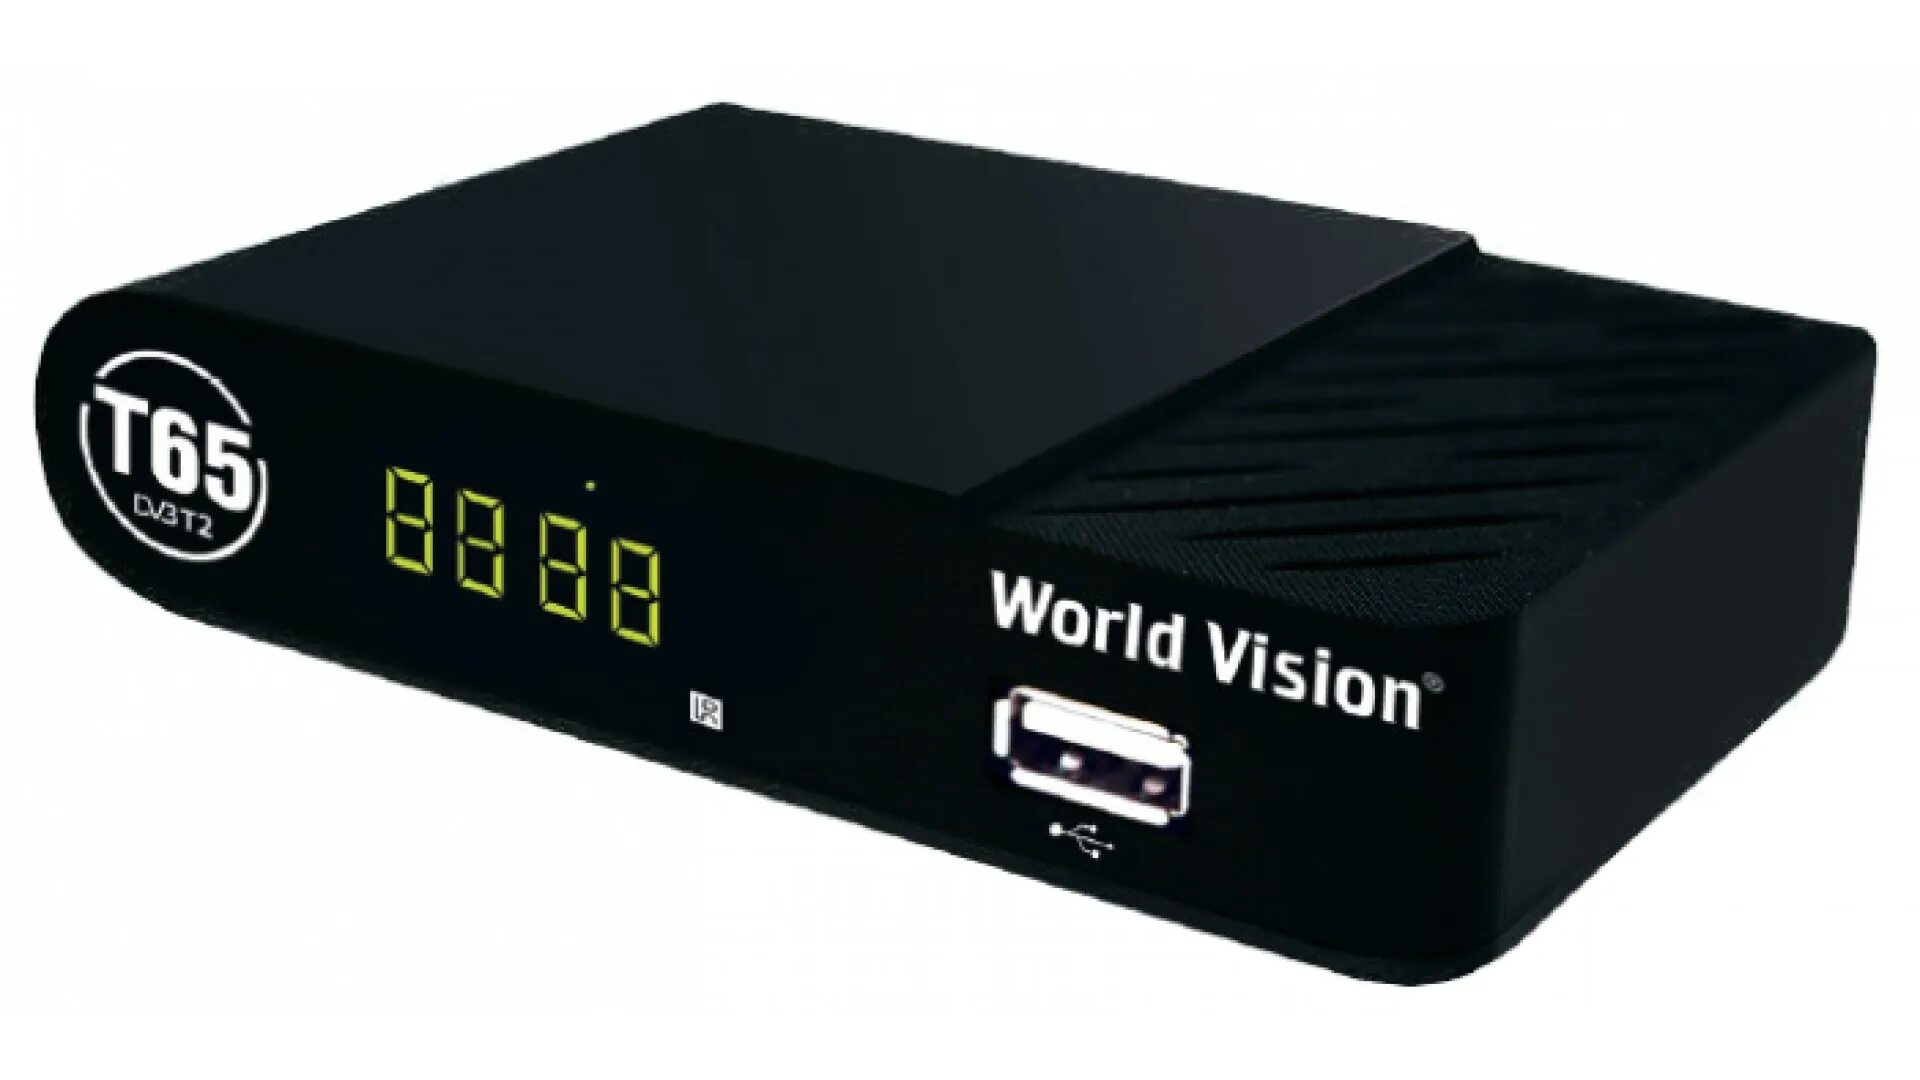 World Vision t65m. Т65м ТВ приставка World Vision. Ресивер DVB-t2 World Vision. Эфирный цифровой приемник World Vision t624d2.